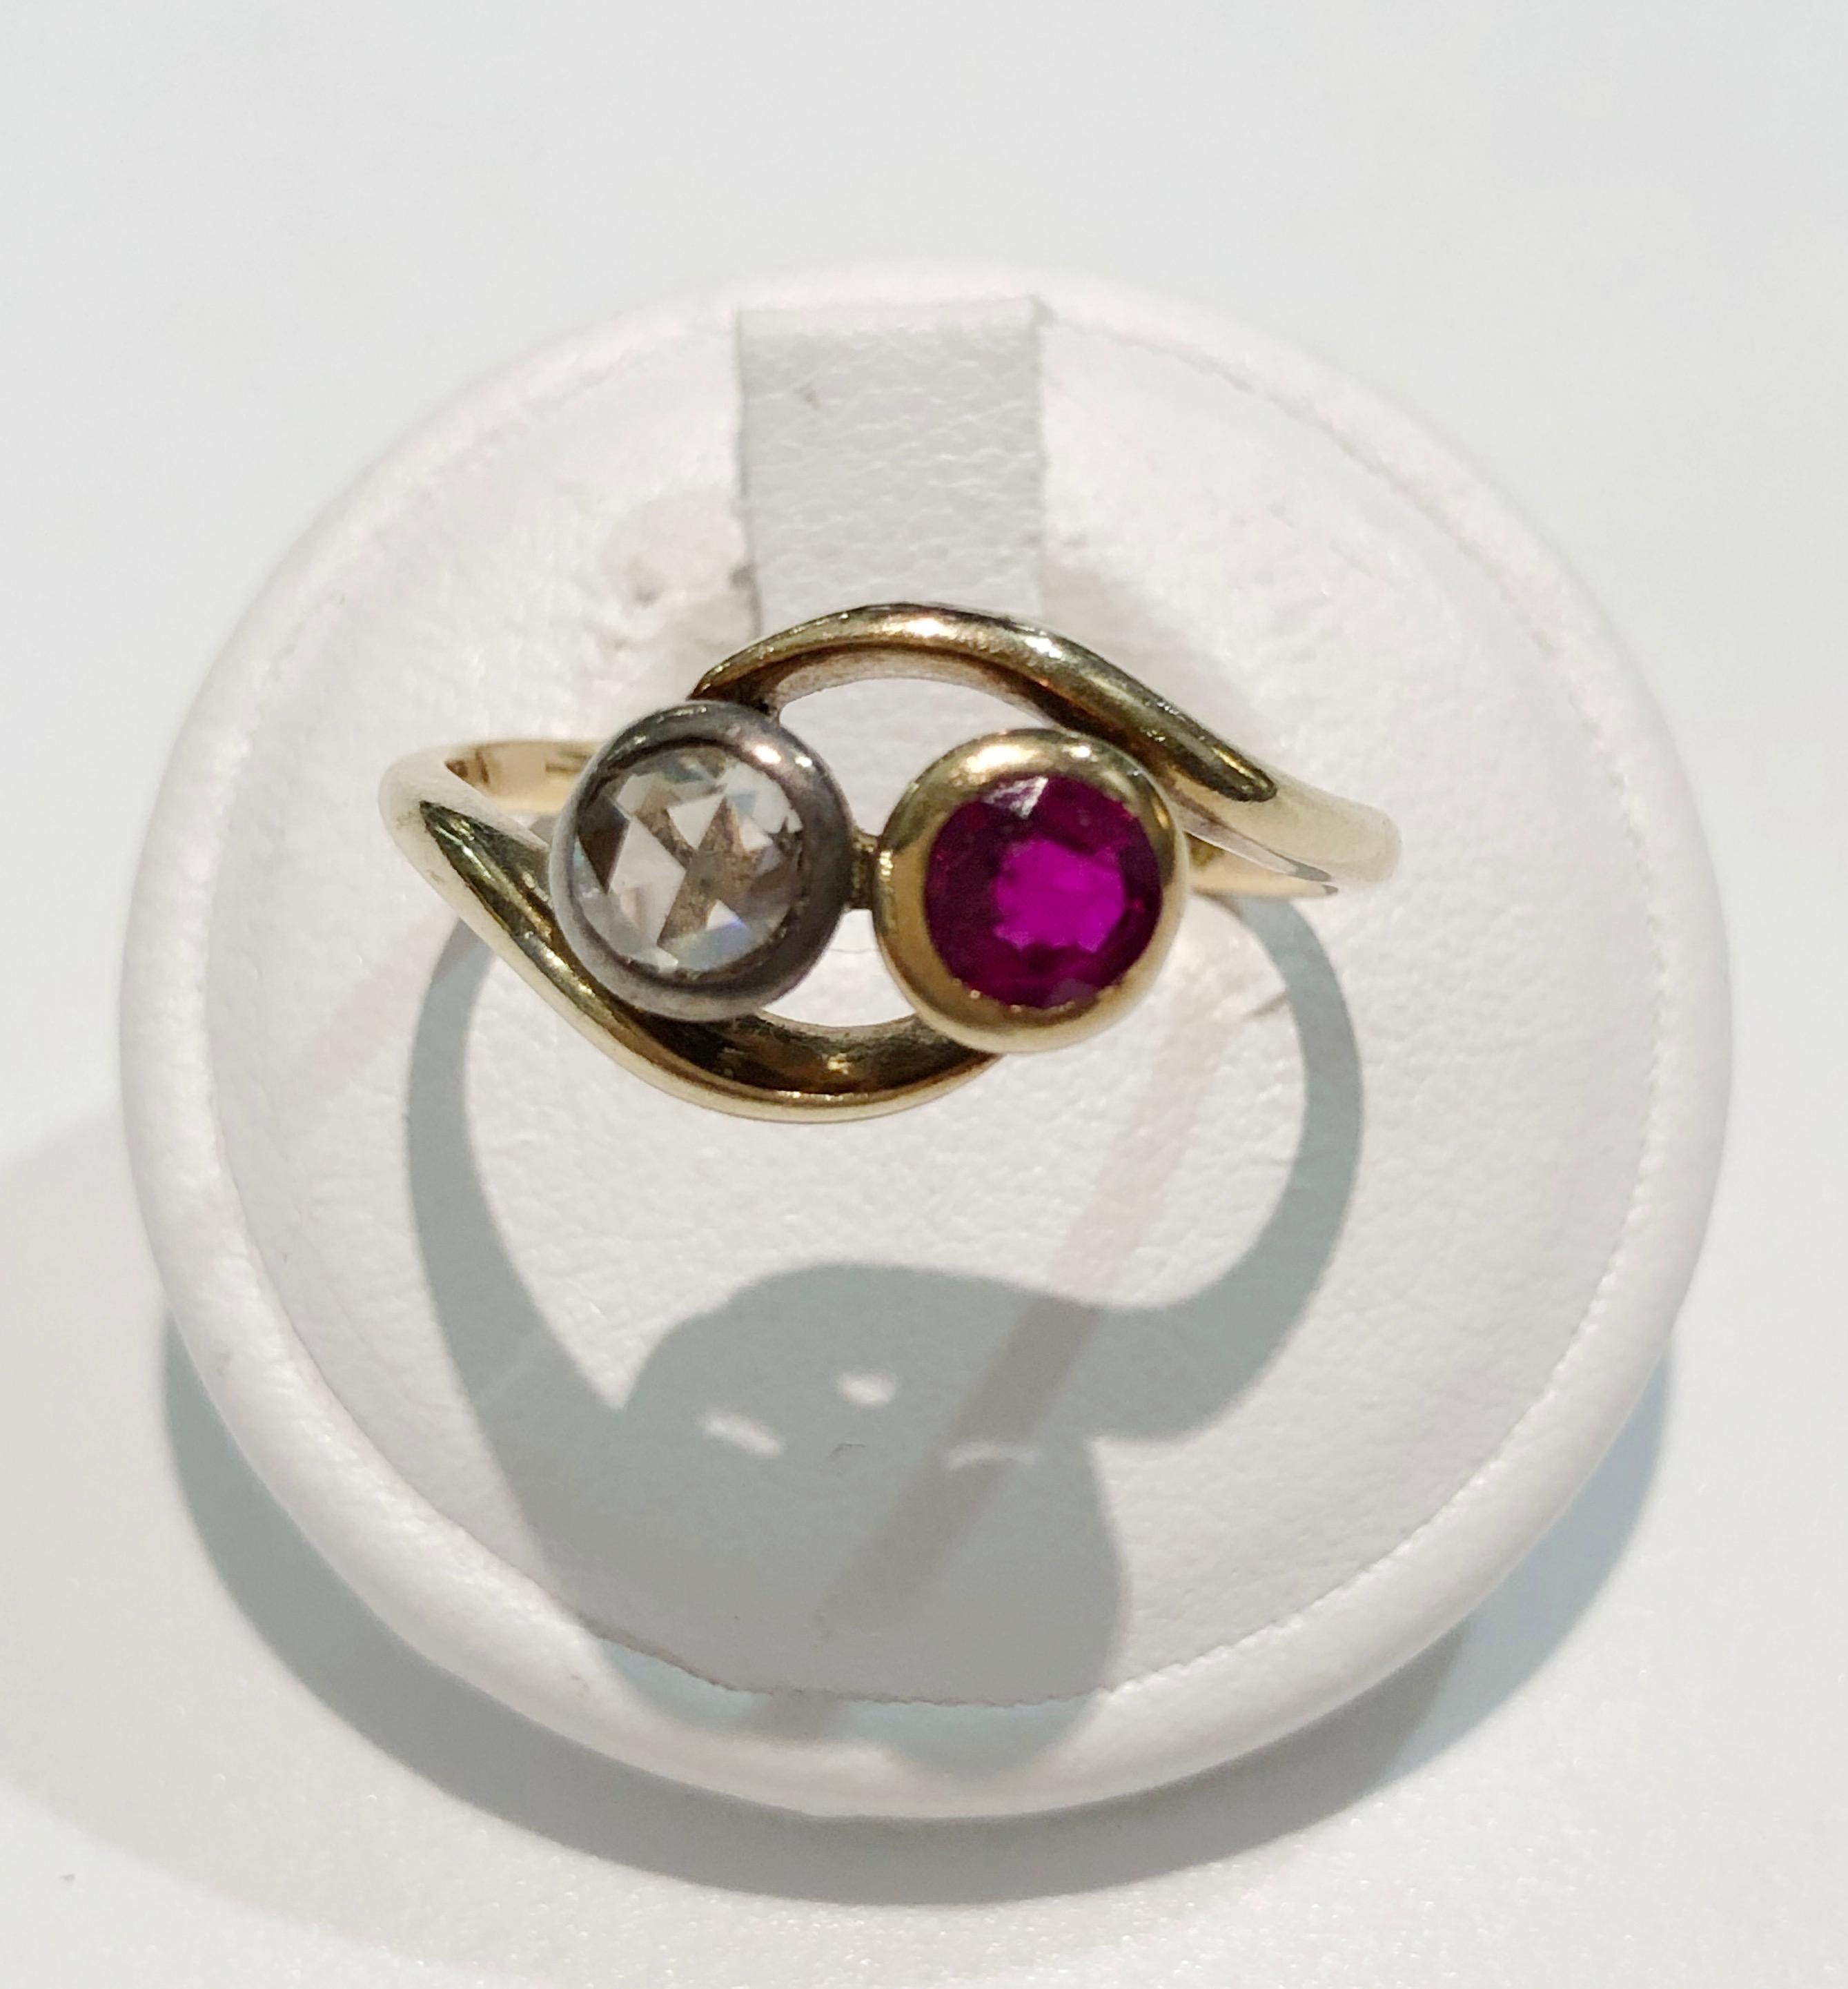 Vintage contrarier 18 Karat Goldring mit Diamant und Rubin, Italien 1870er-1890er Jahre
Ringgröße US 8